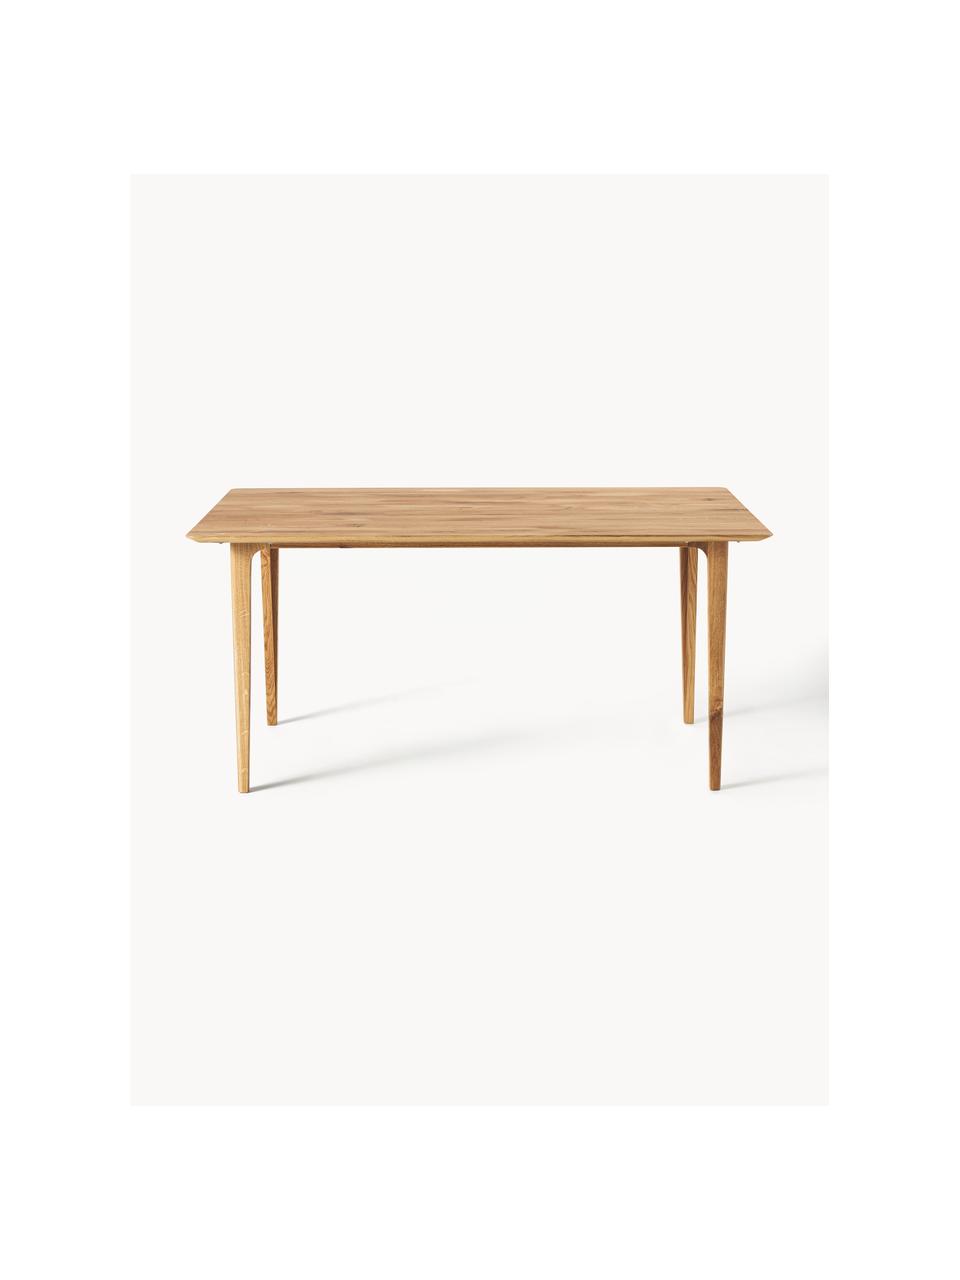 Jídelní stůl z dubového dřeva Archie, různé velikosti, Masivní dubové dřevo, olejované
100 % FSC dřevo z udržitelného lesnictví, Dubové dřevo, Š 180 cm, H 90 cm